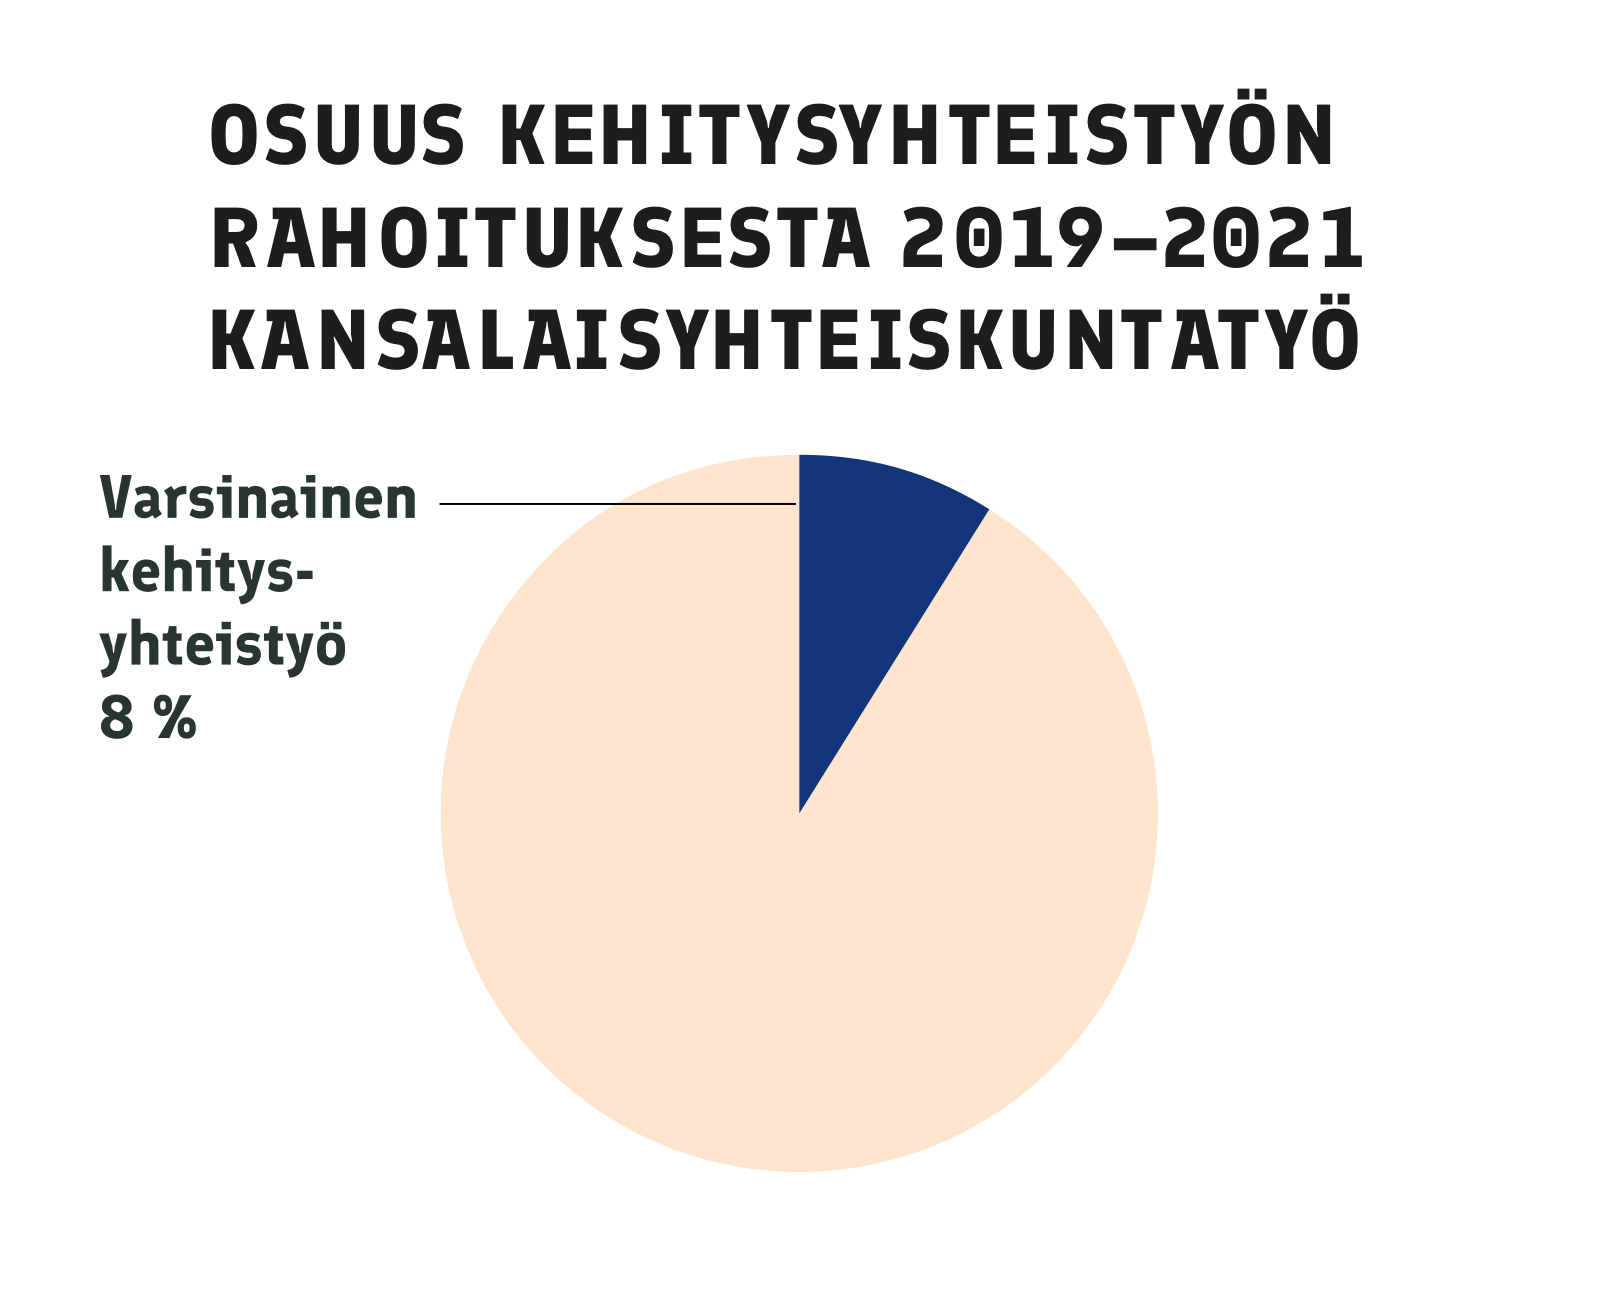 Vuosina 2019-2021 Suomi käytti 8 prosenttia kehitysyhteistyöstään kansalaisyhteiskuntatyöhön. Koko osuus laskettiin nin sanotuksi varsinaiseksi kehitysyhteistyöksi.